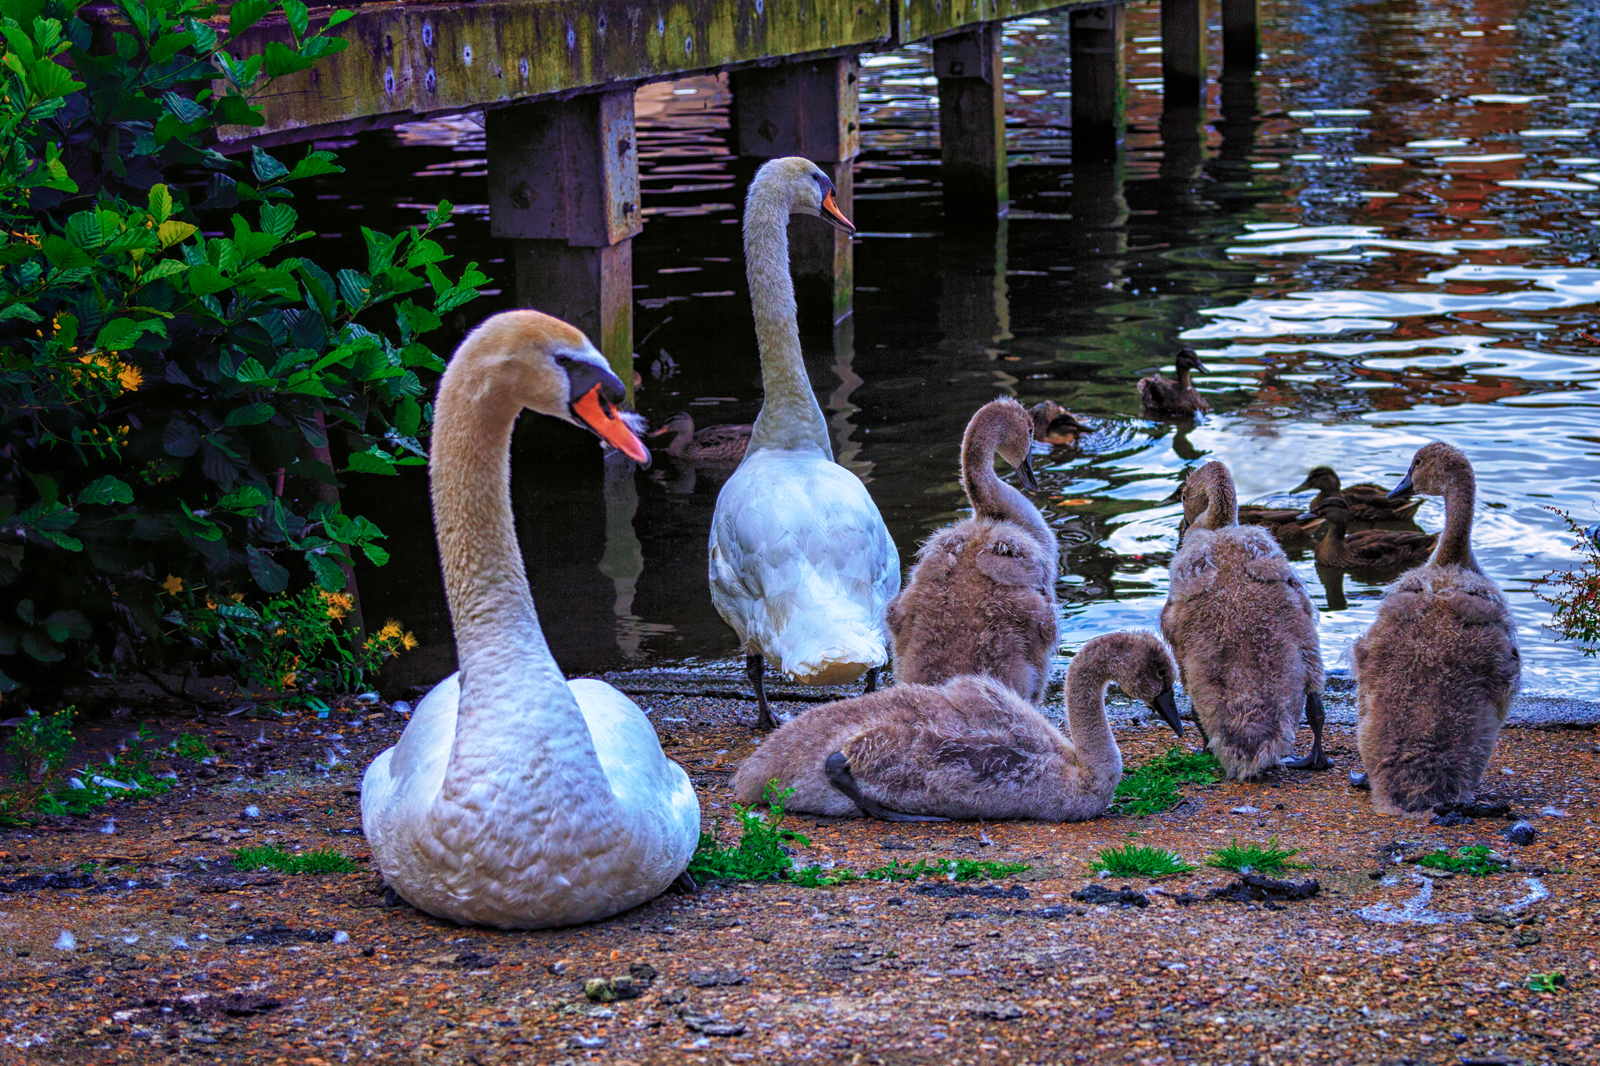 Swan-Family